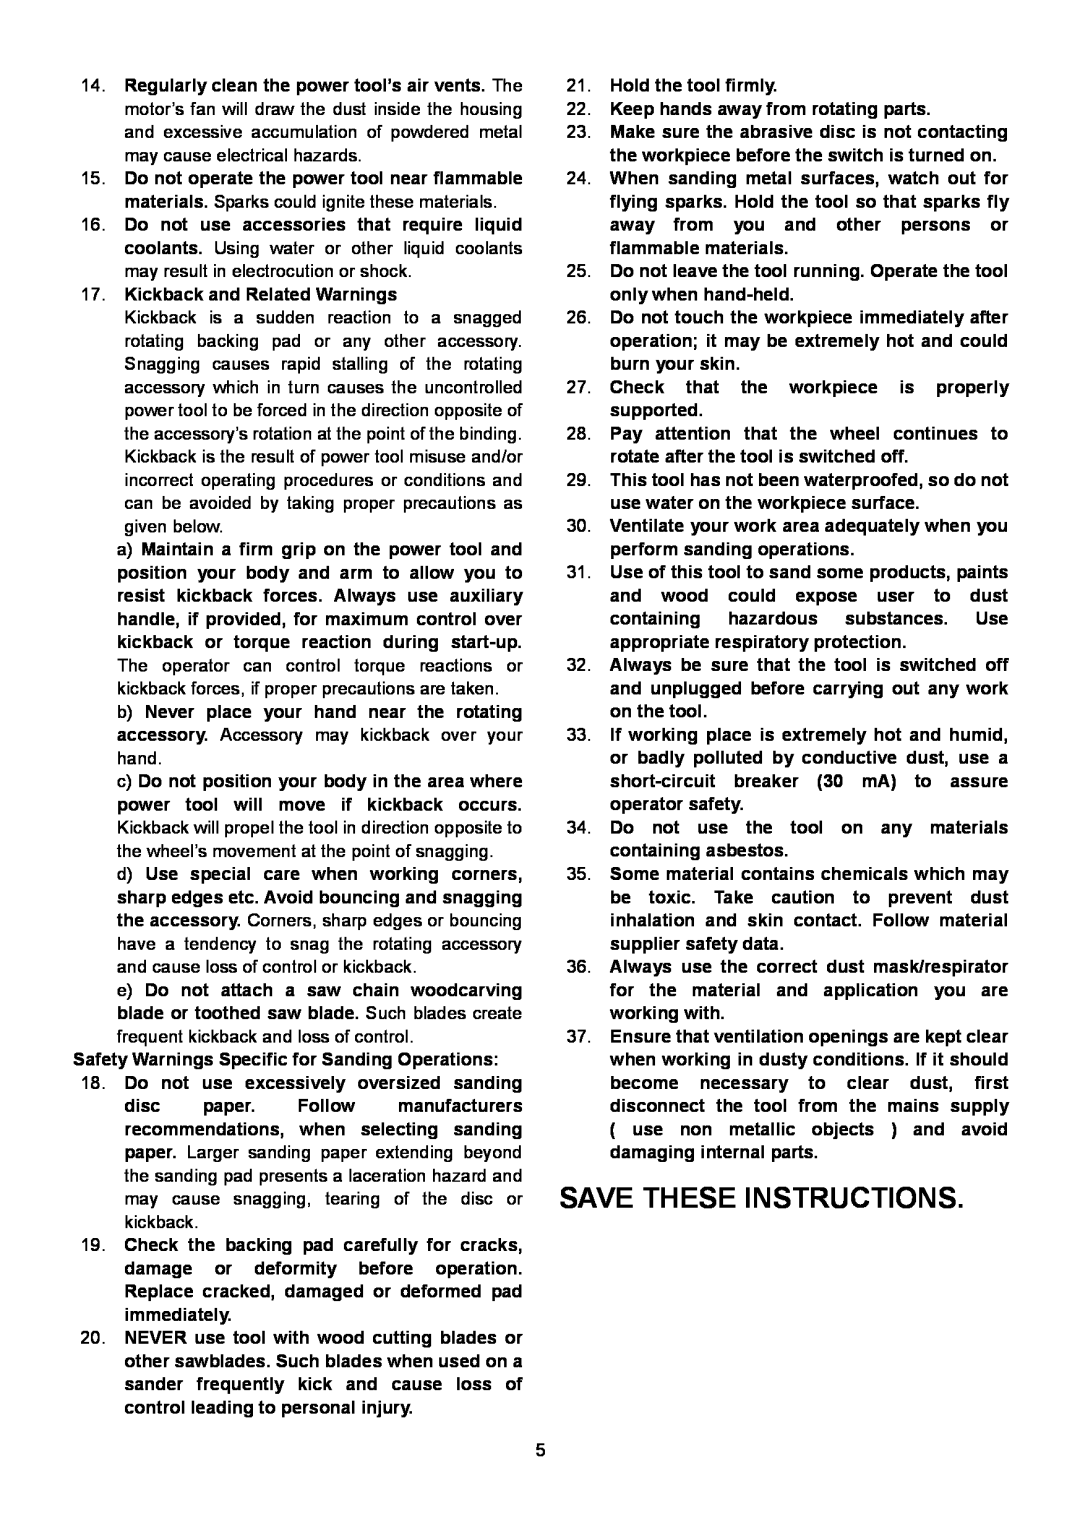 Makita SA7000C instruction manual Save These Instructions 